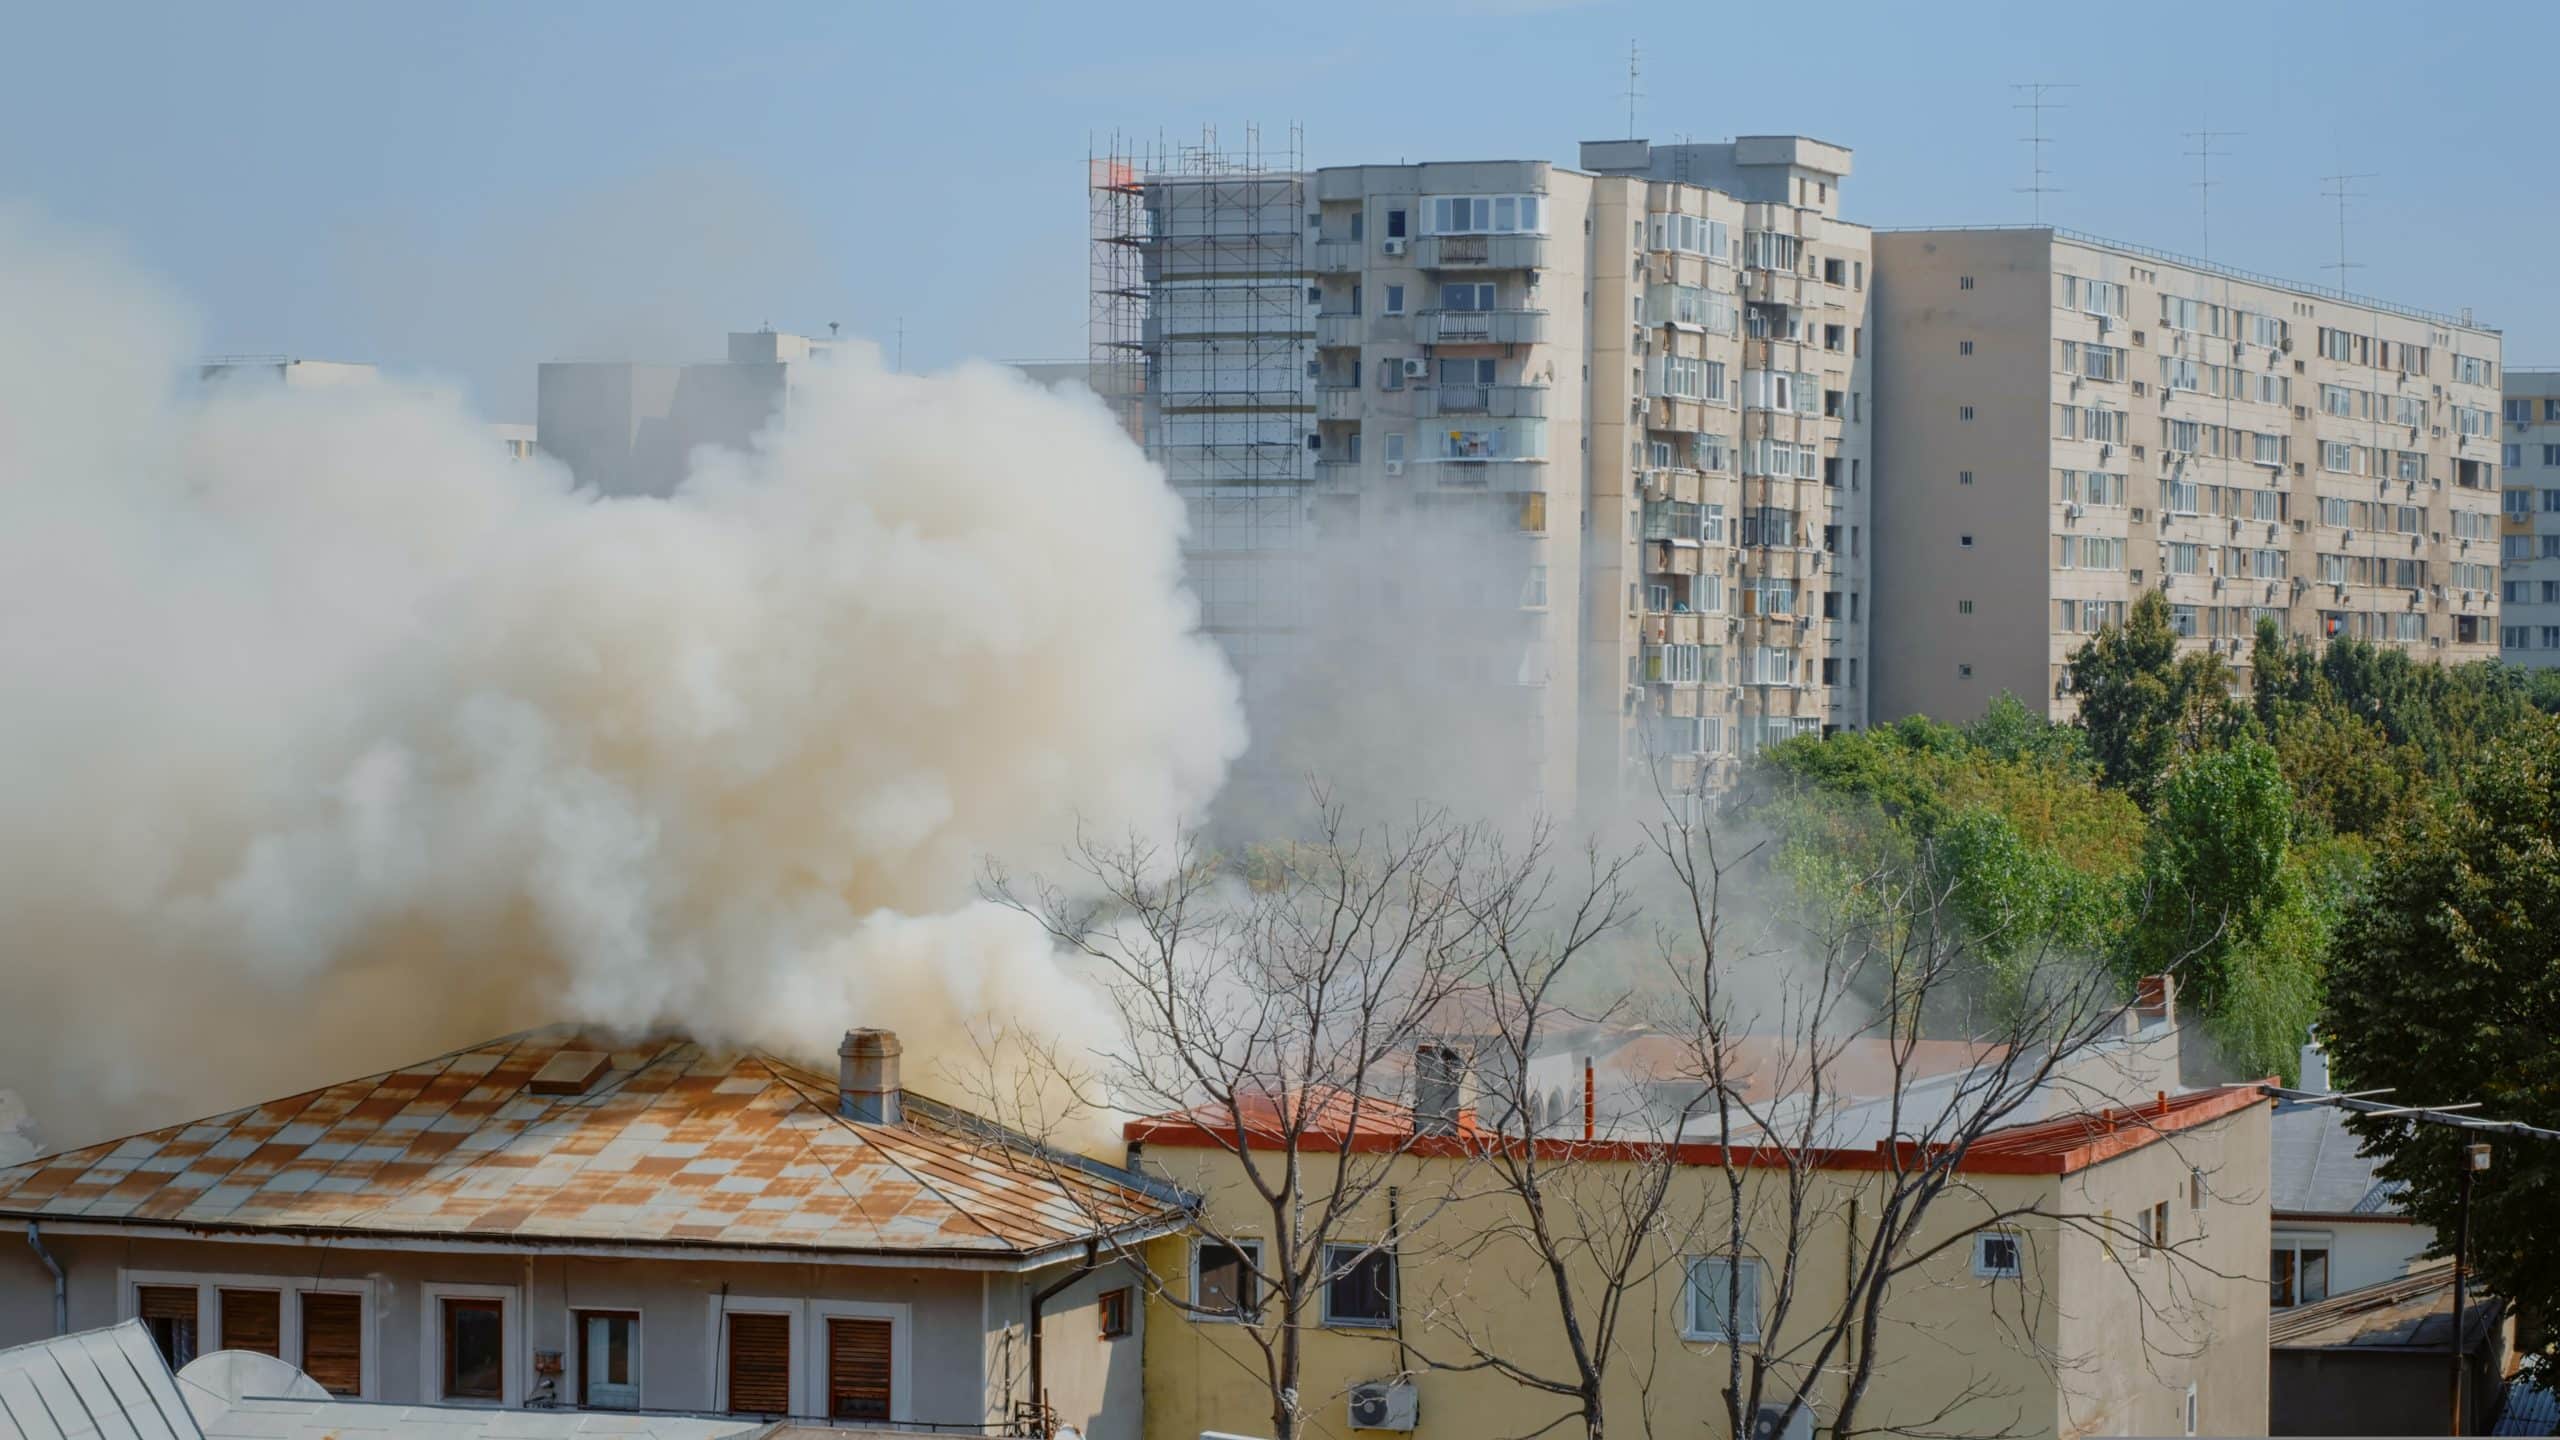 עשן מכסה בתים פרטיים ובניינים כתוצאה משריפה